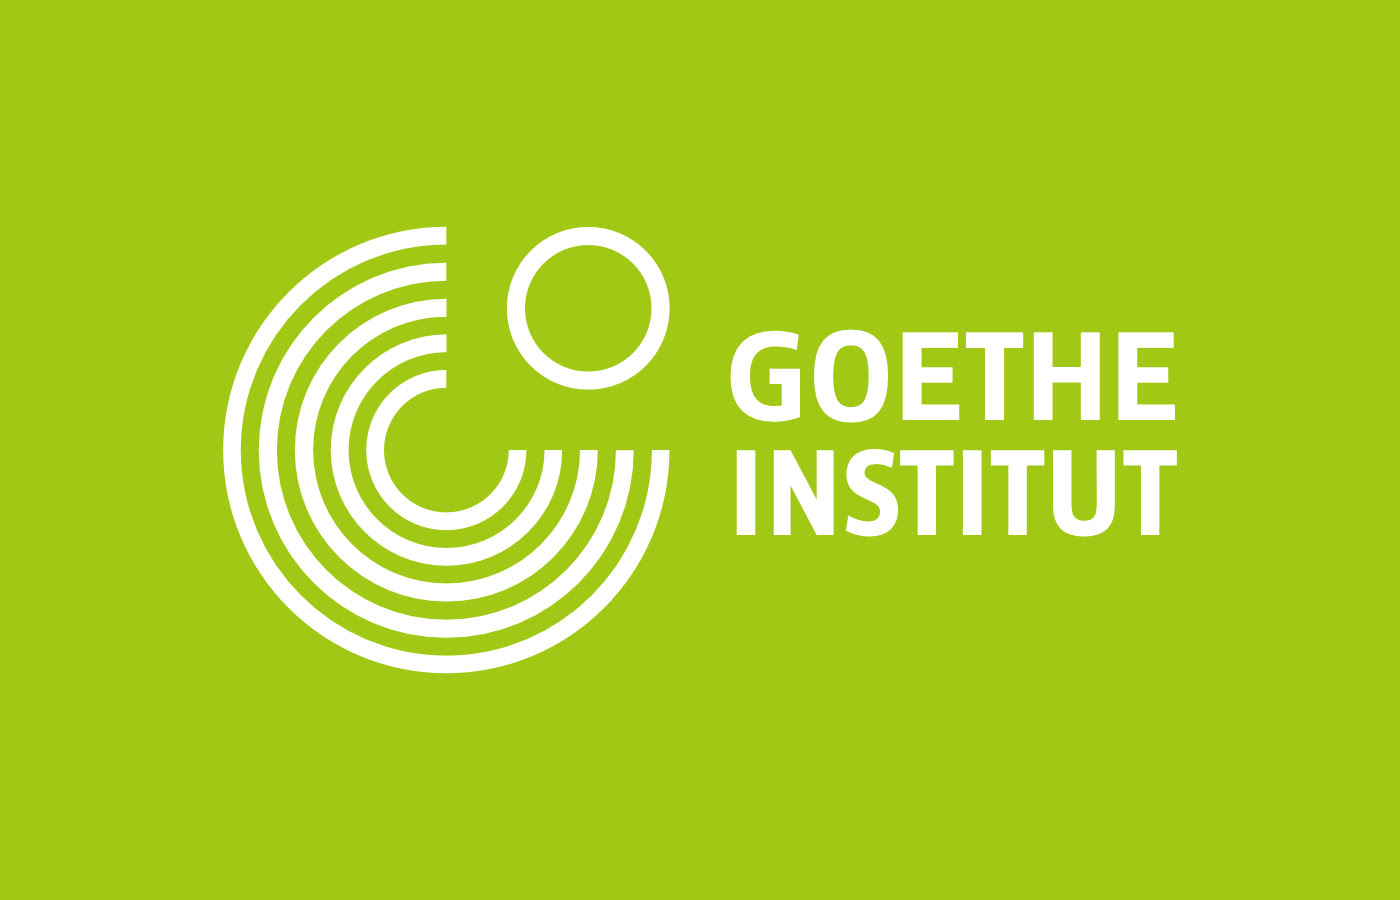 Goethe Yaz okulu Kayıtlarımız Başladı!